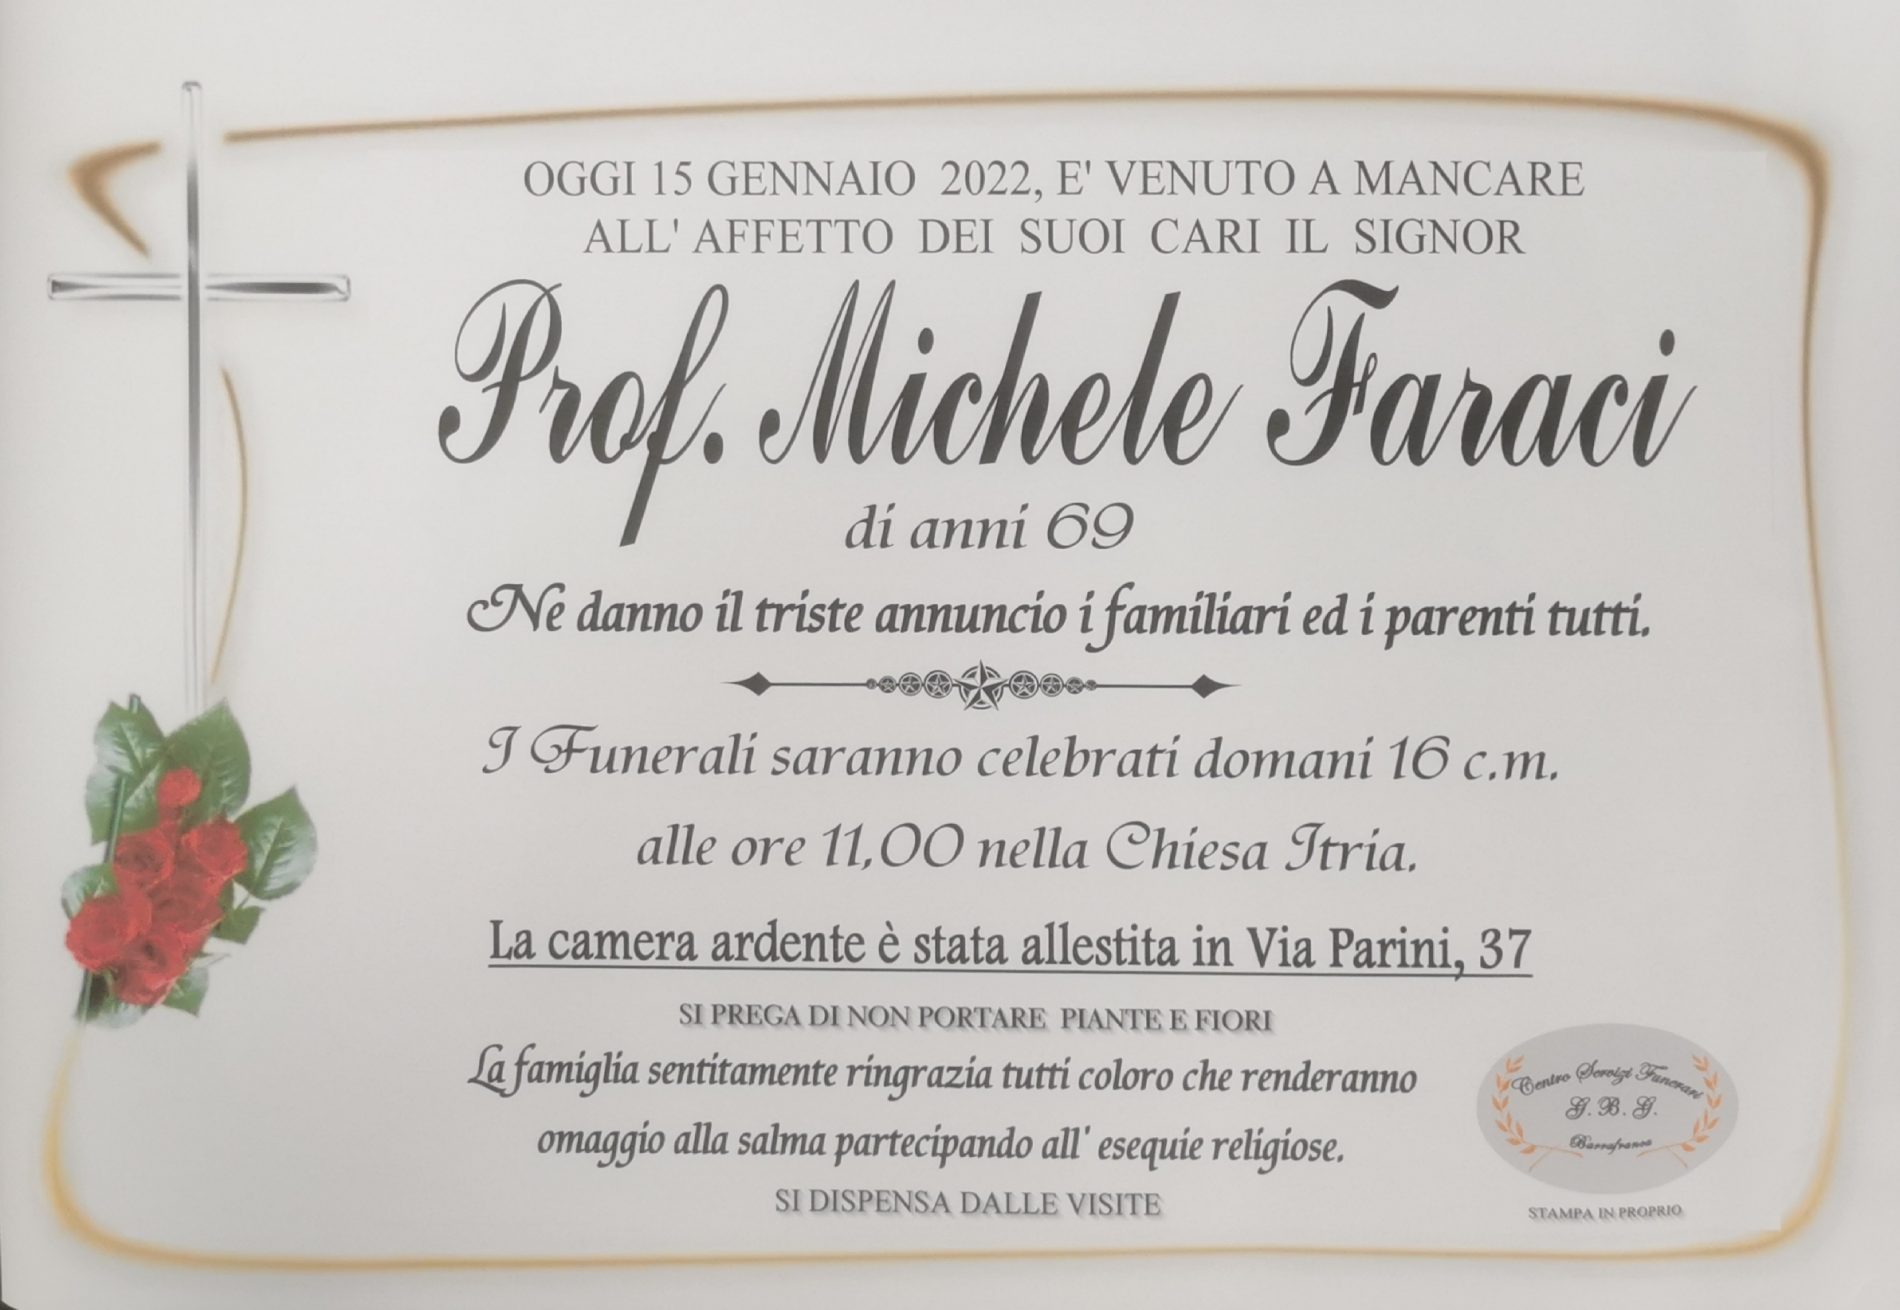 Annuncio servizi funerari agenzia G.B.G. Prof. Michele Faraci di anni 69